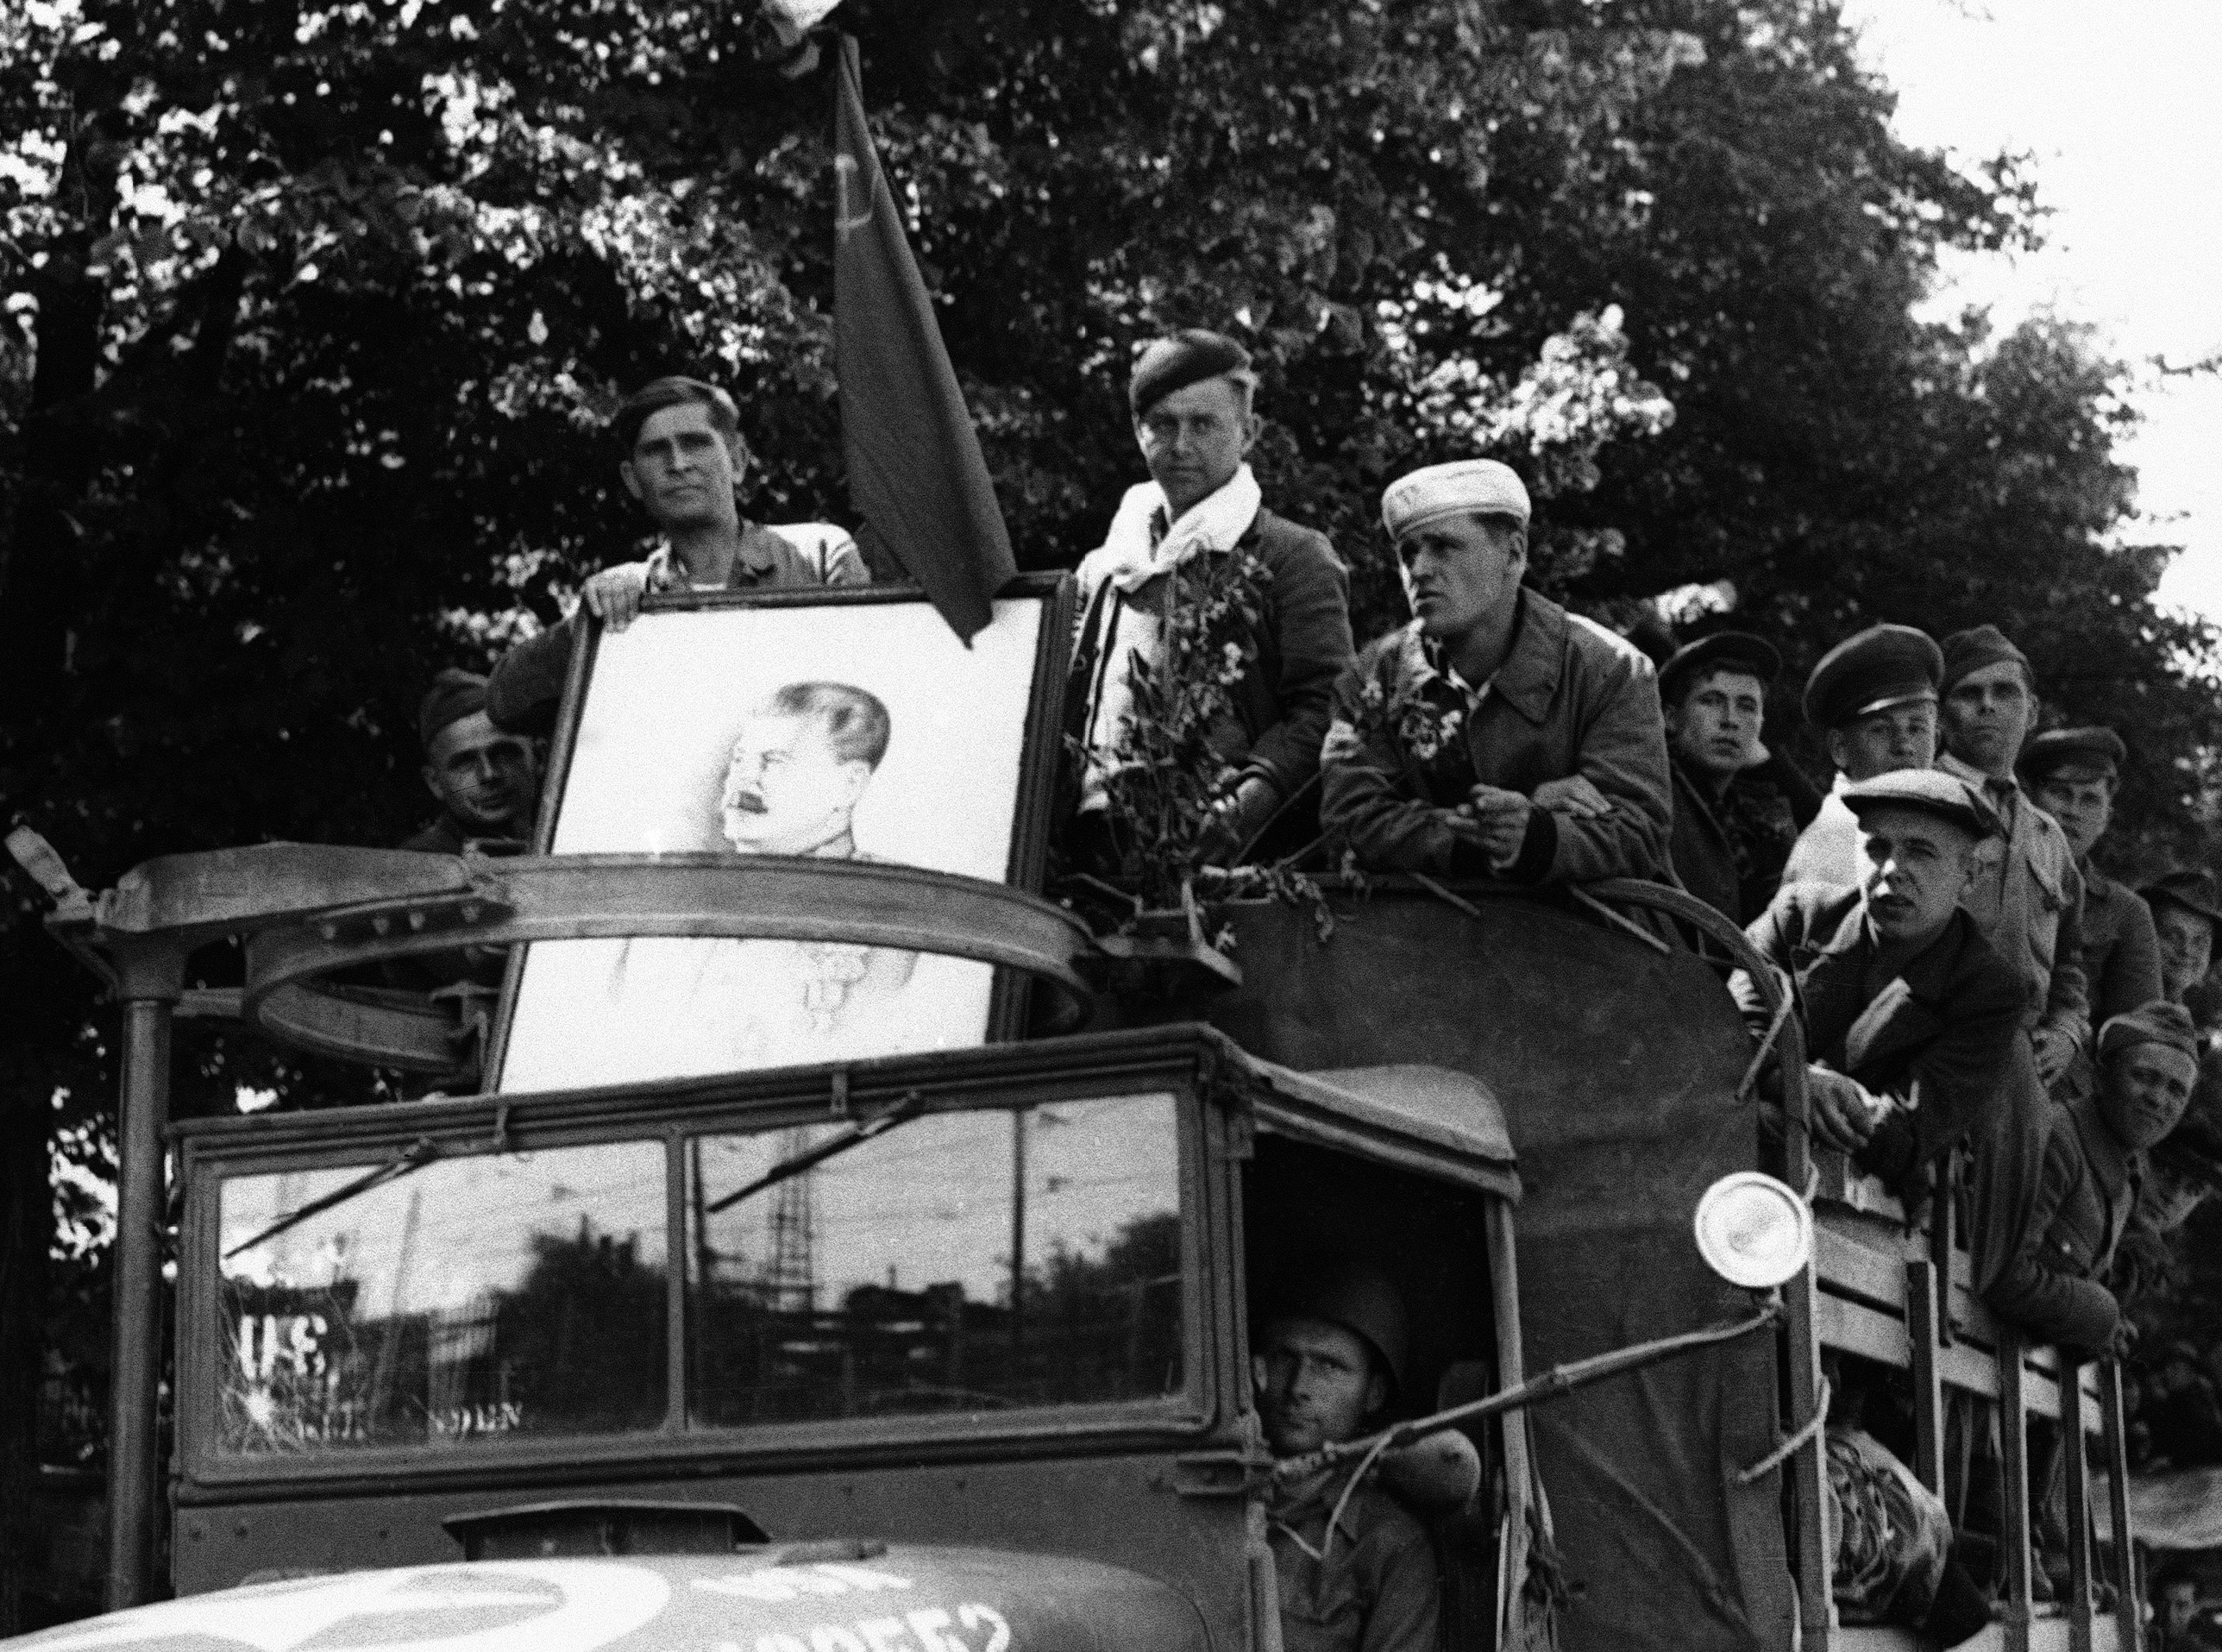 Εκτοπισμένοι Σοβιετικοί, πολλοί από τους οποίους αναγκάστηκαν να εργαστούν σε ναζιστικές συμμορίες σκλαβιάς είναι σκαρφαλωμένοι σε ένα αμερικανικό φορτηγό στο Μόναχο της Γερμανίας στις 21 Ιουνίου 1945, στο πρώτο στάδιο του ταξιδιού τους στο σπίτι. Στο μπροστινό μέρος του φορτηγού φαίνεται ένα πορτρέτο του στρατάρχη Στάλιν  (AP)